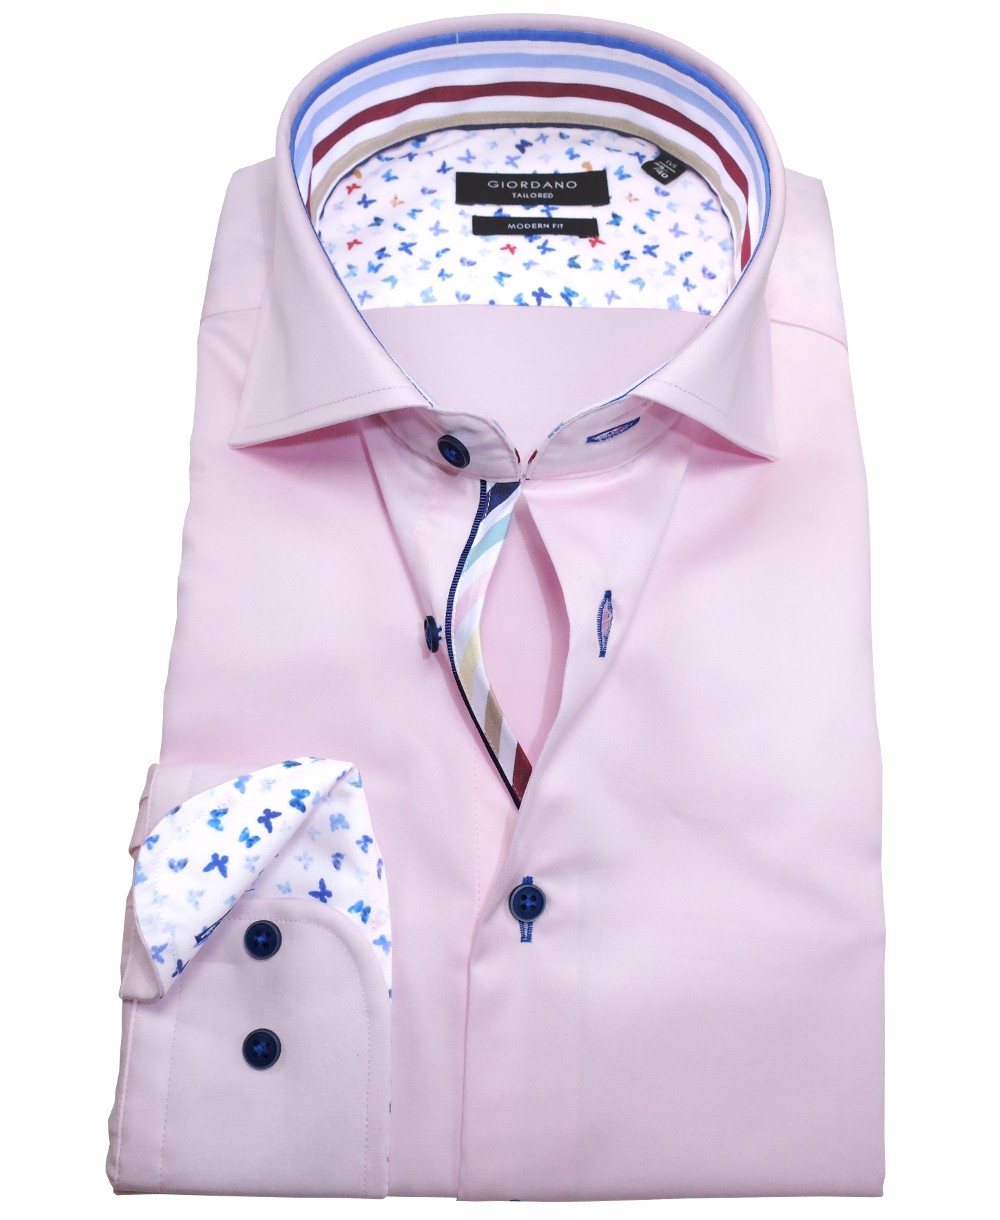 Giordano Langarmhemd Modern Fit rosa Hochwertige bunten fairen weiss Patches mit führender Marken zu Herrenmode 